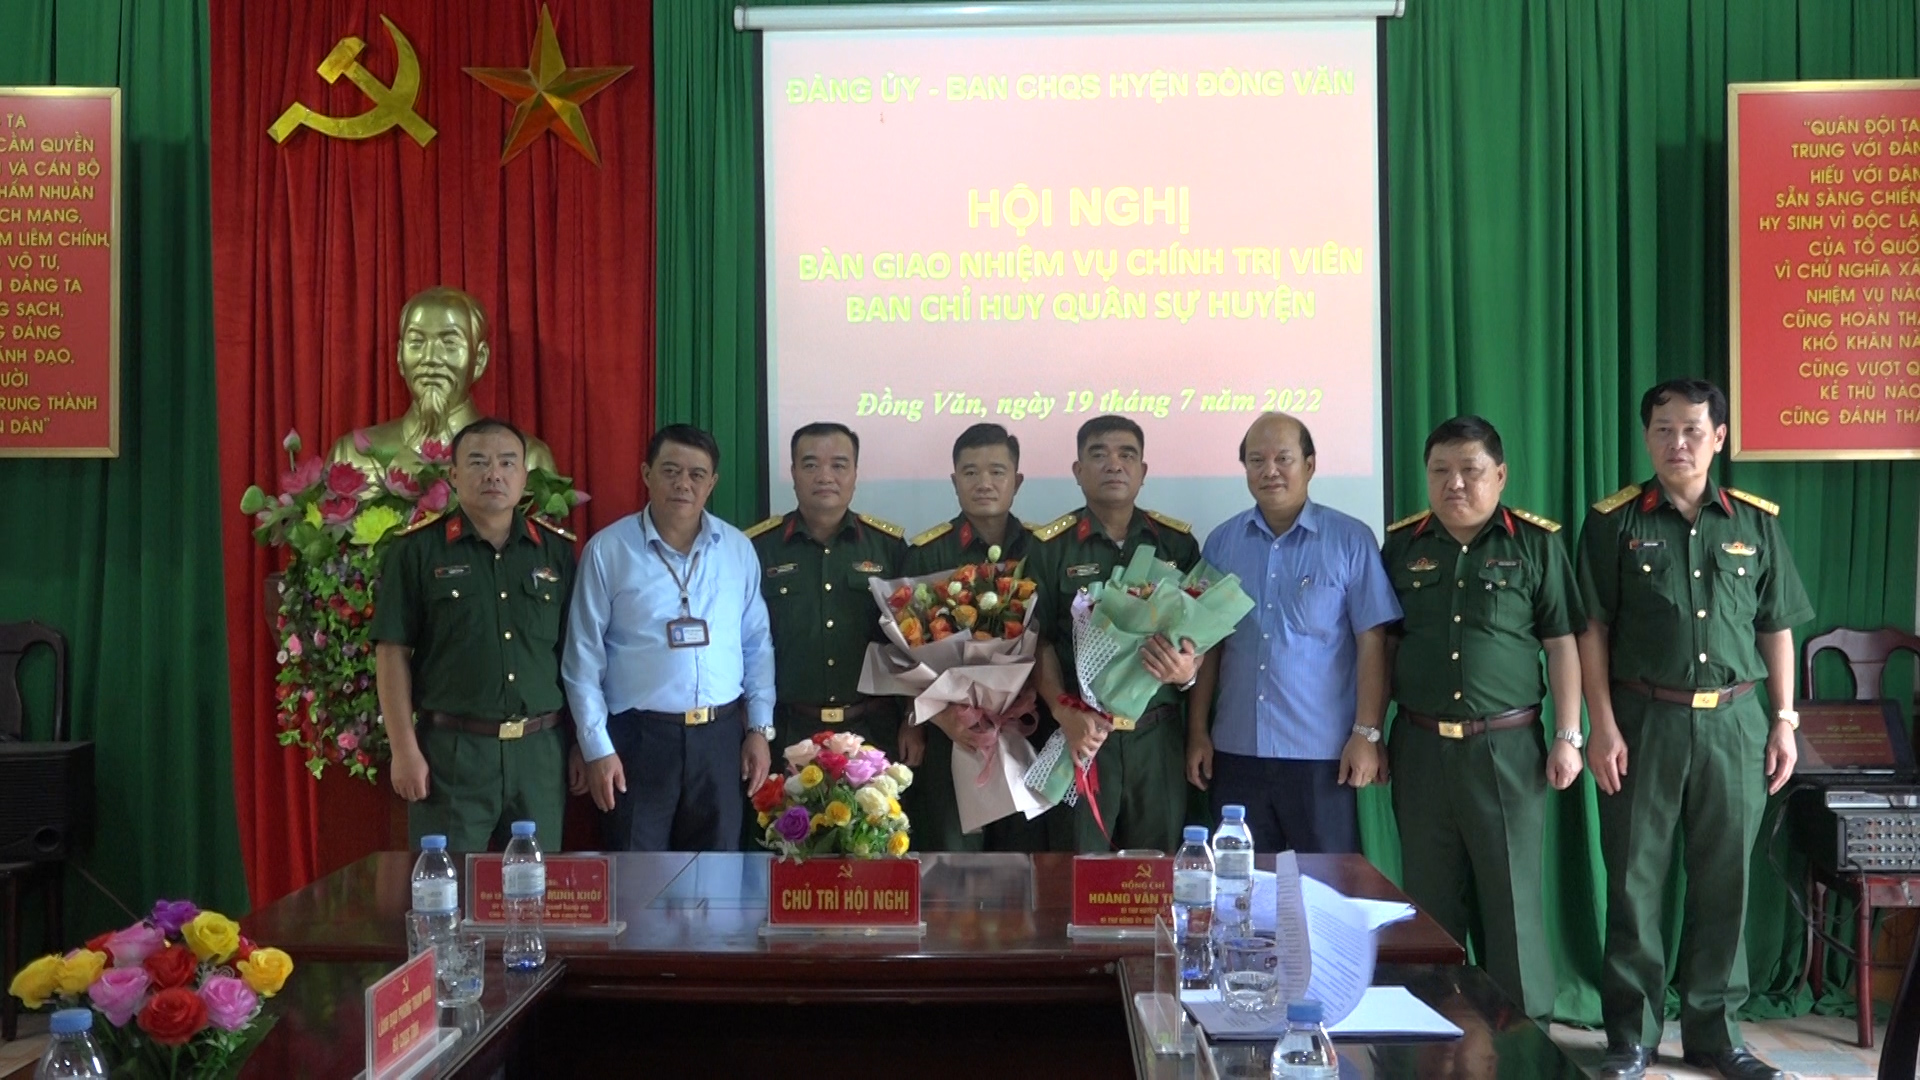 Hội nghị bàn giao chức danh, nhiệm vụ chính trị viên Ban chỉ huy Quân sự huyện Đồng Văn